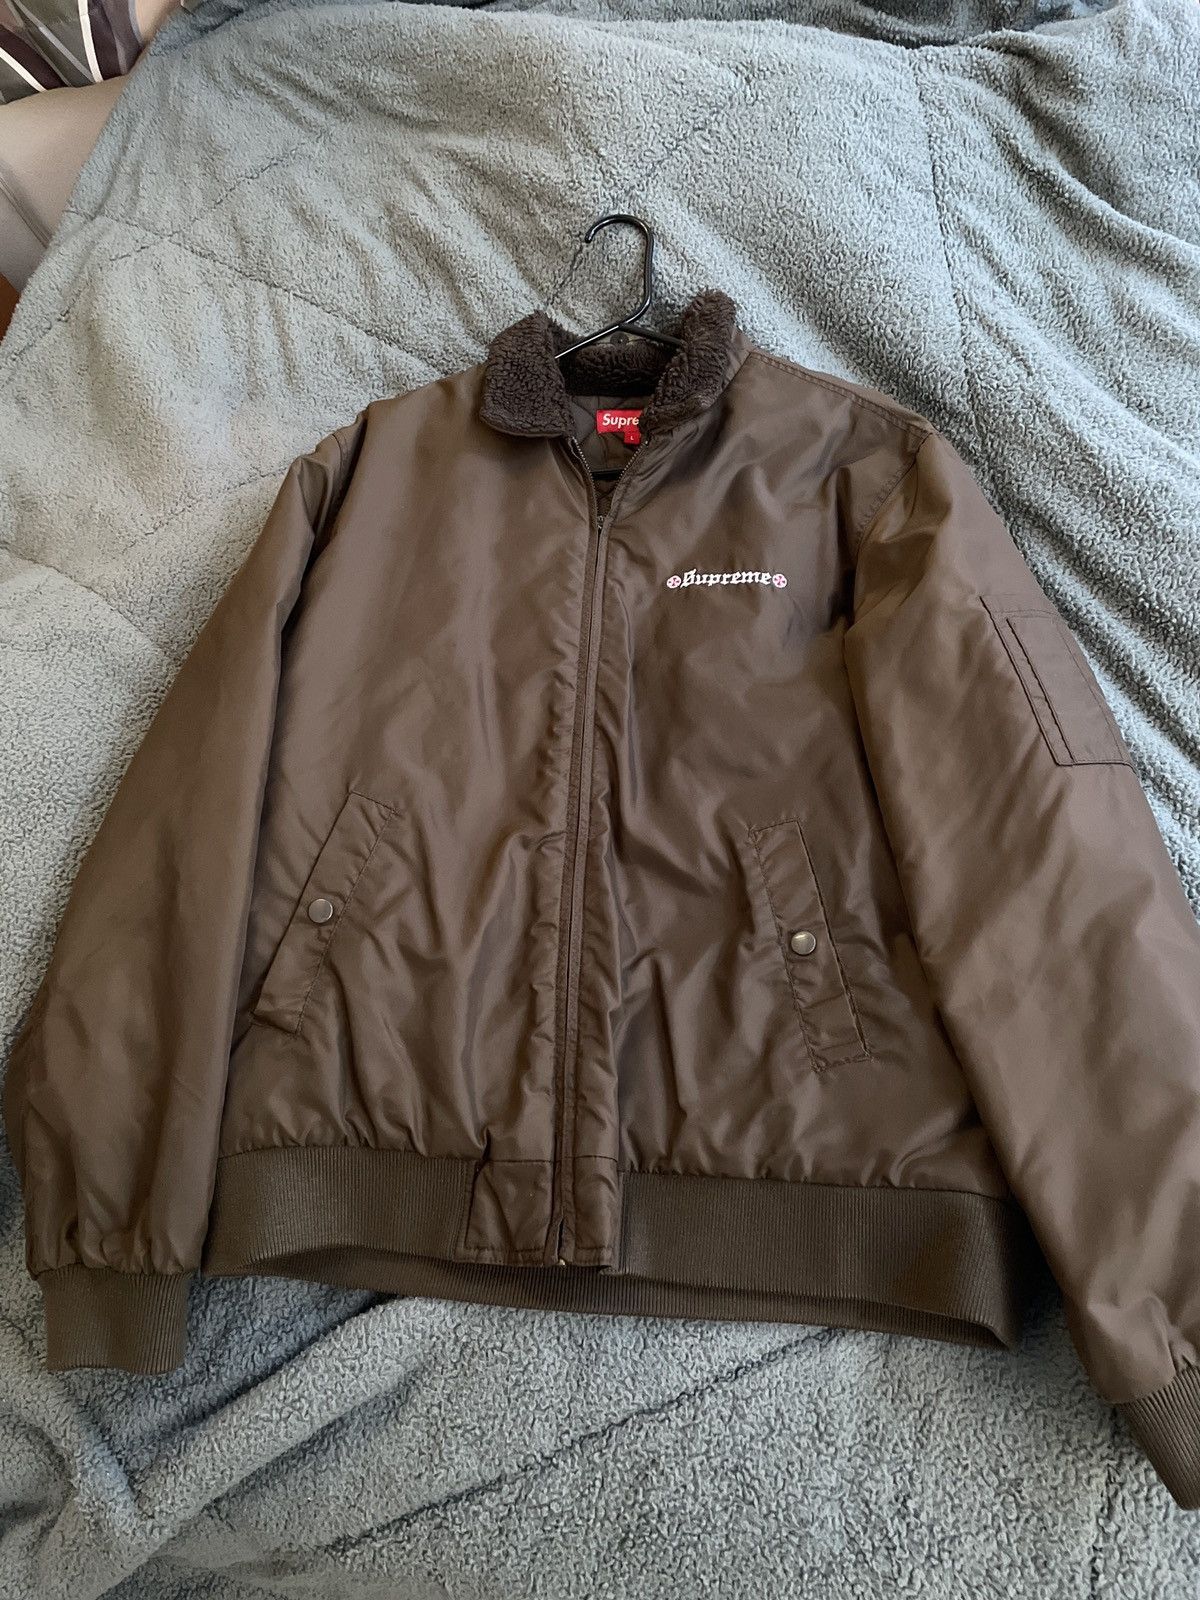 Supreme Supreme independent brown fur collar bomber jacket | Grailed